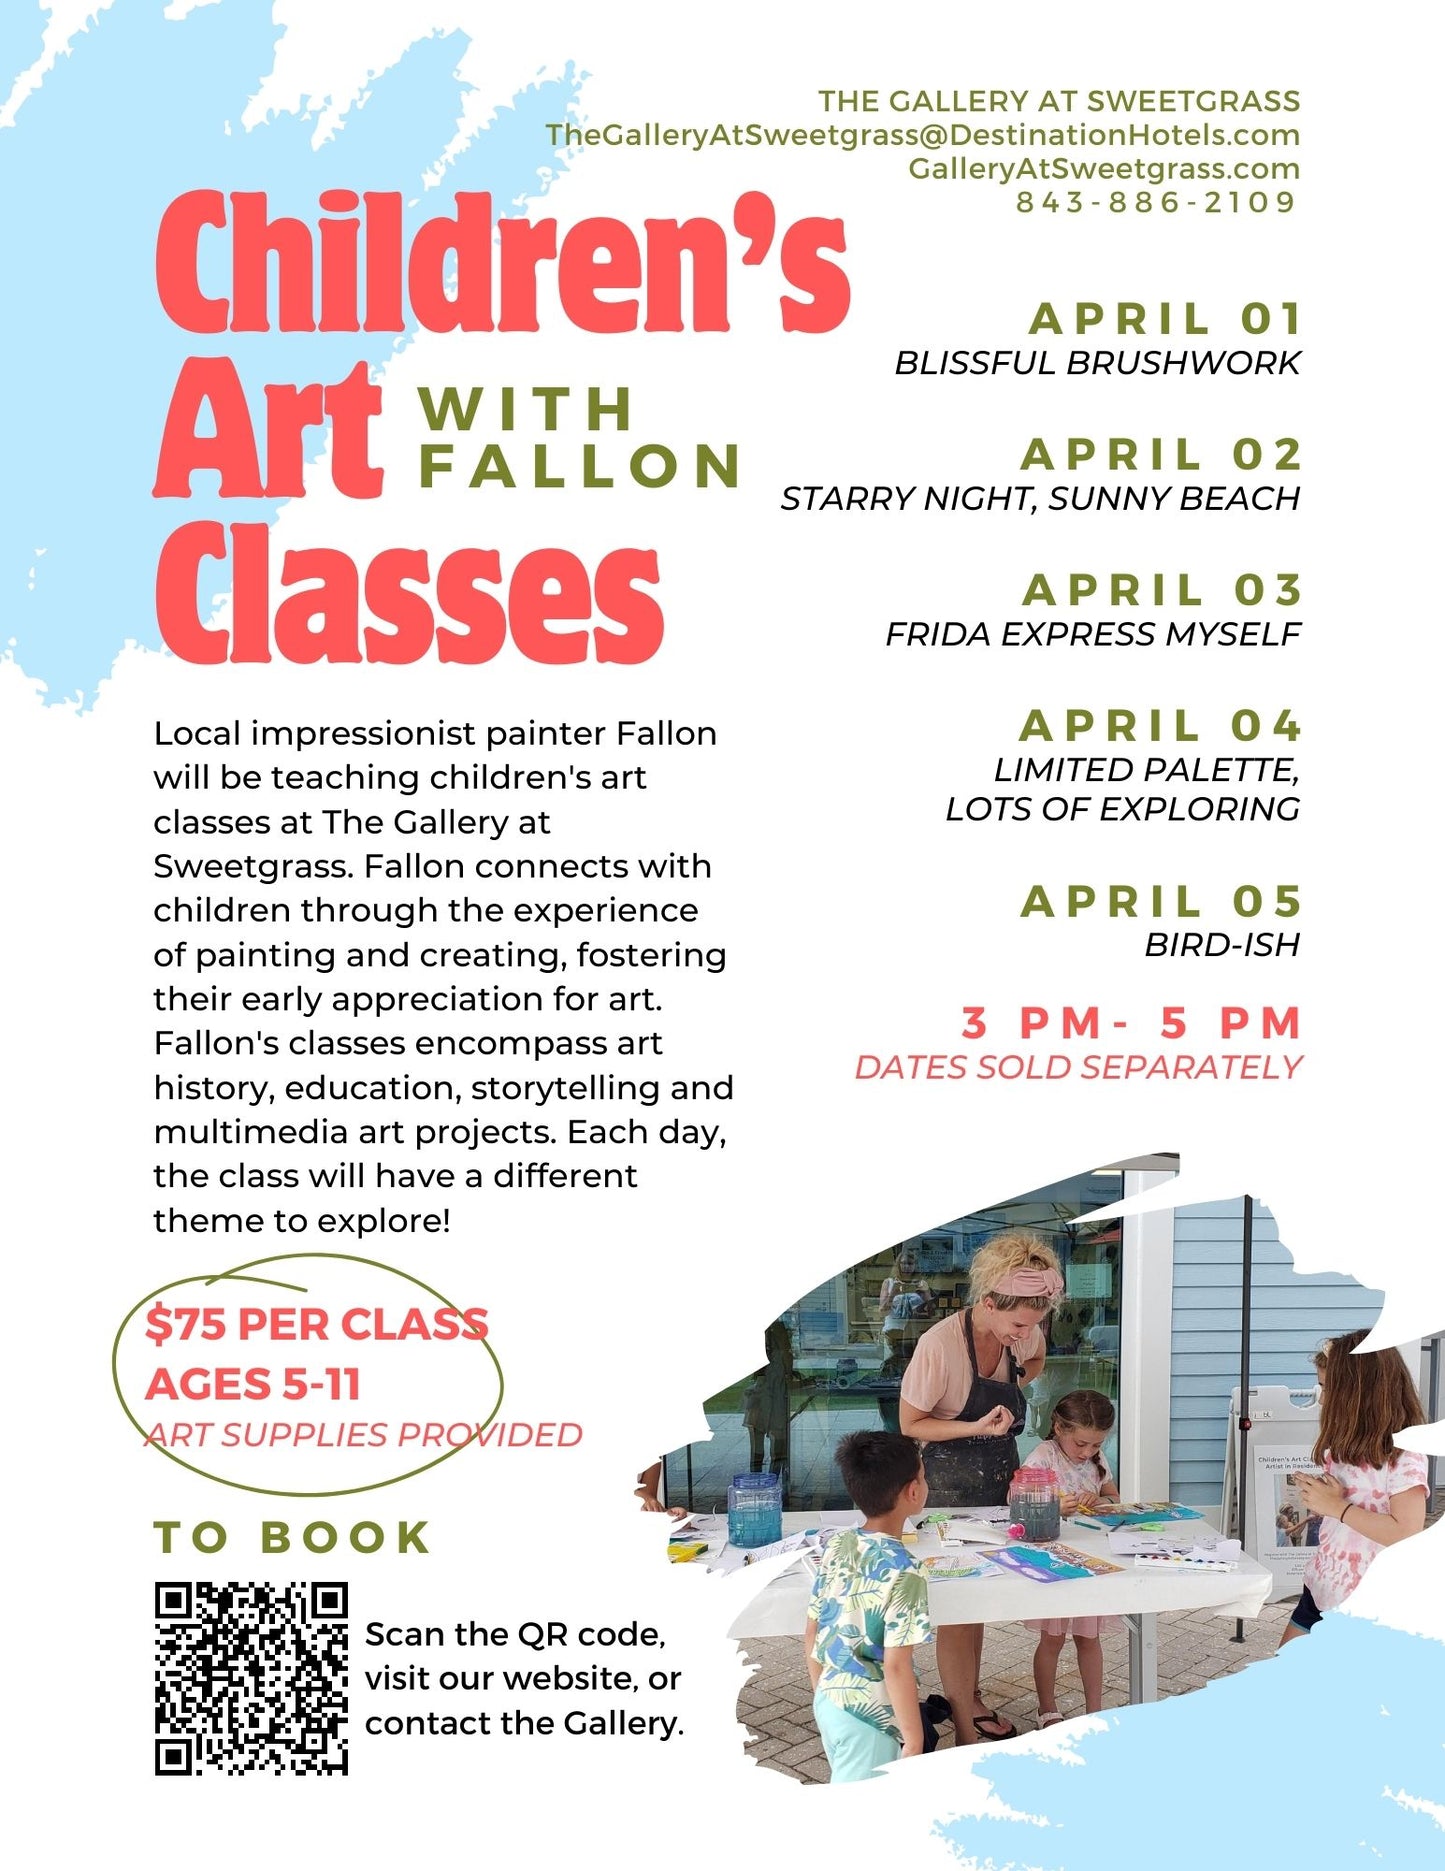 Children's Art Classes with Fallon